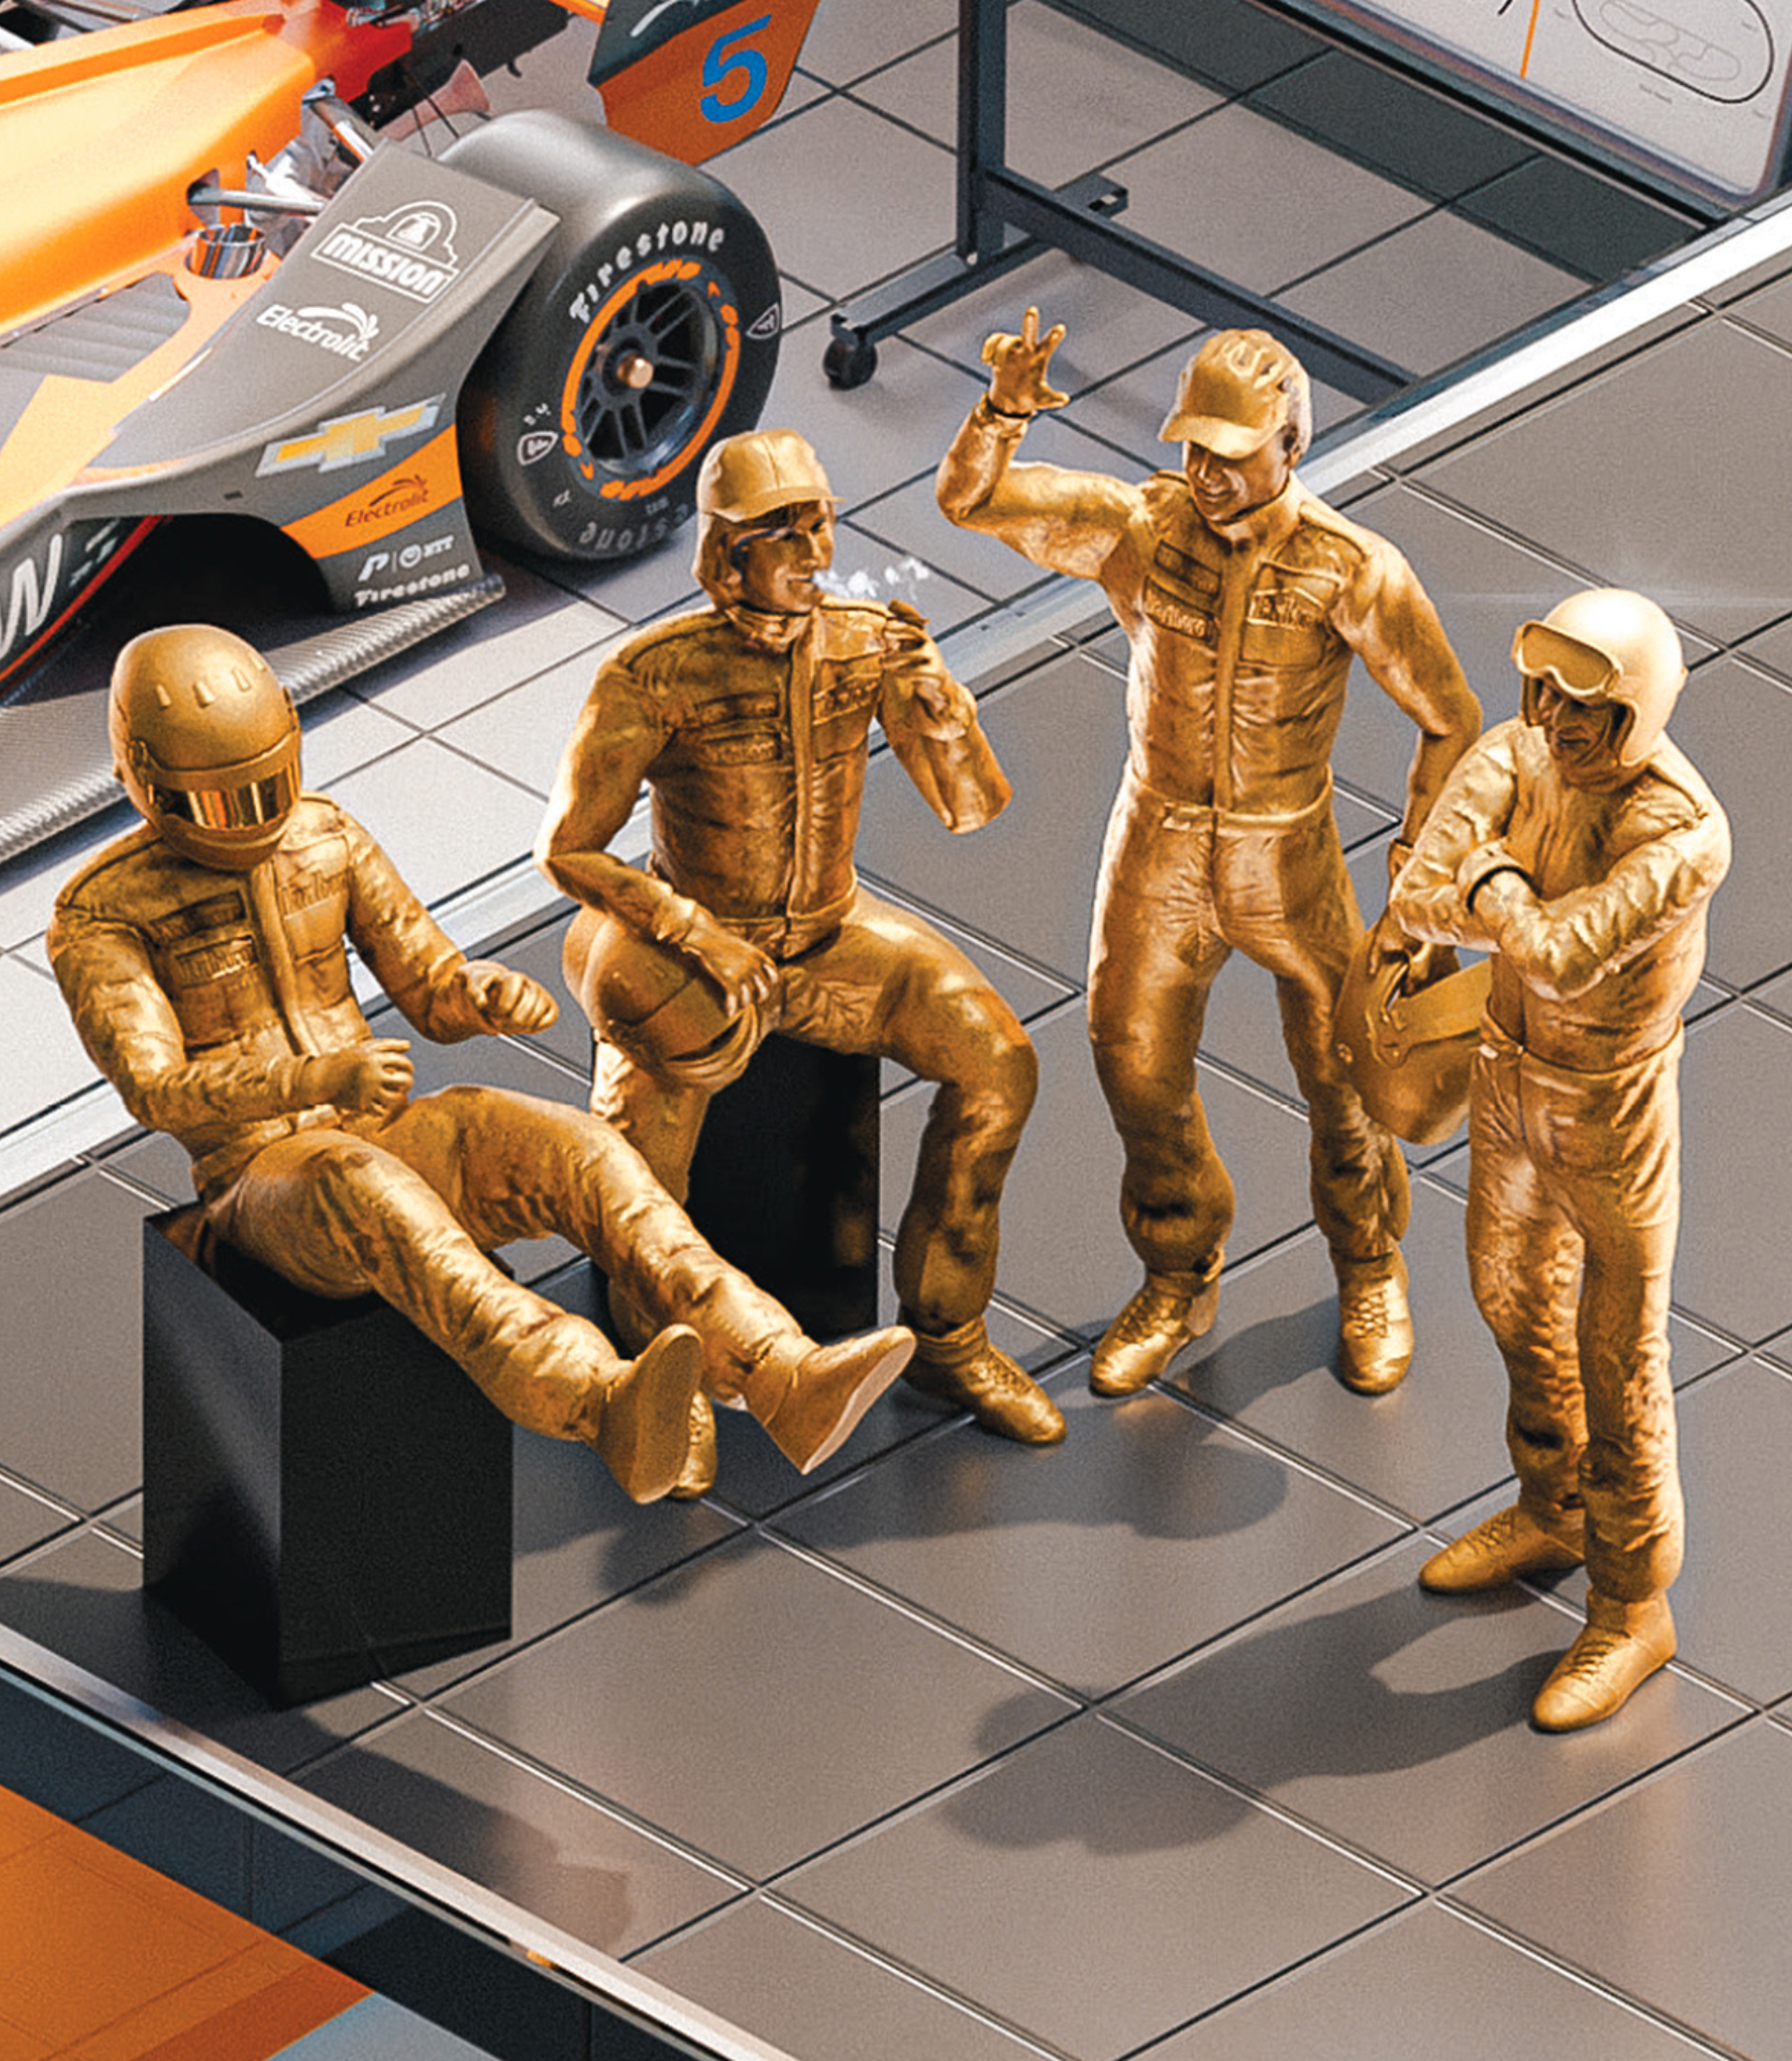 McLaren Racing - Season's Greetings - 60th Anniversary - 2023